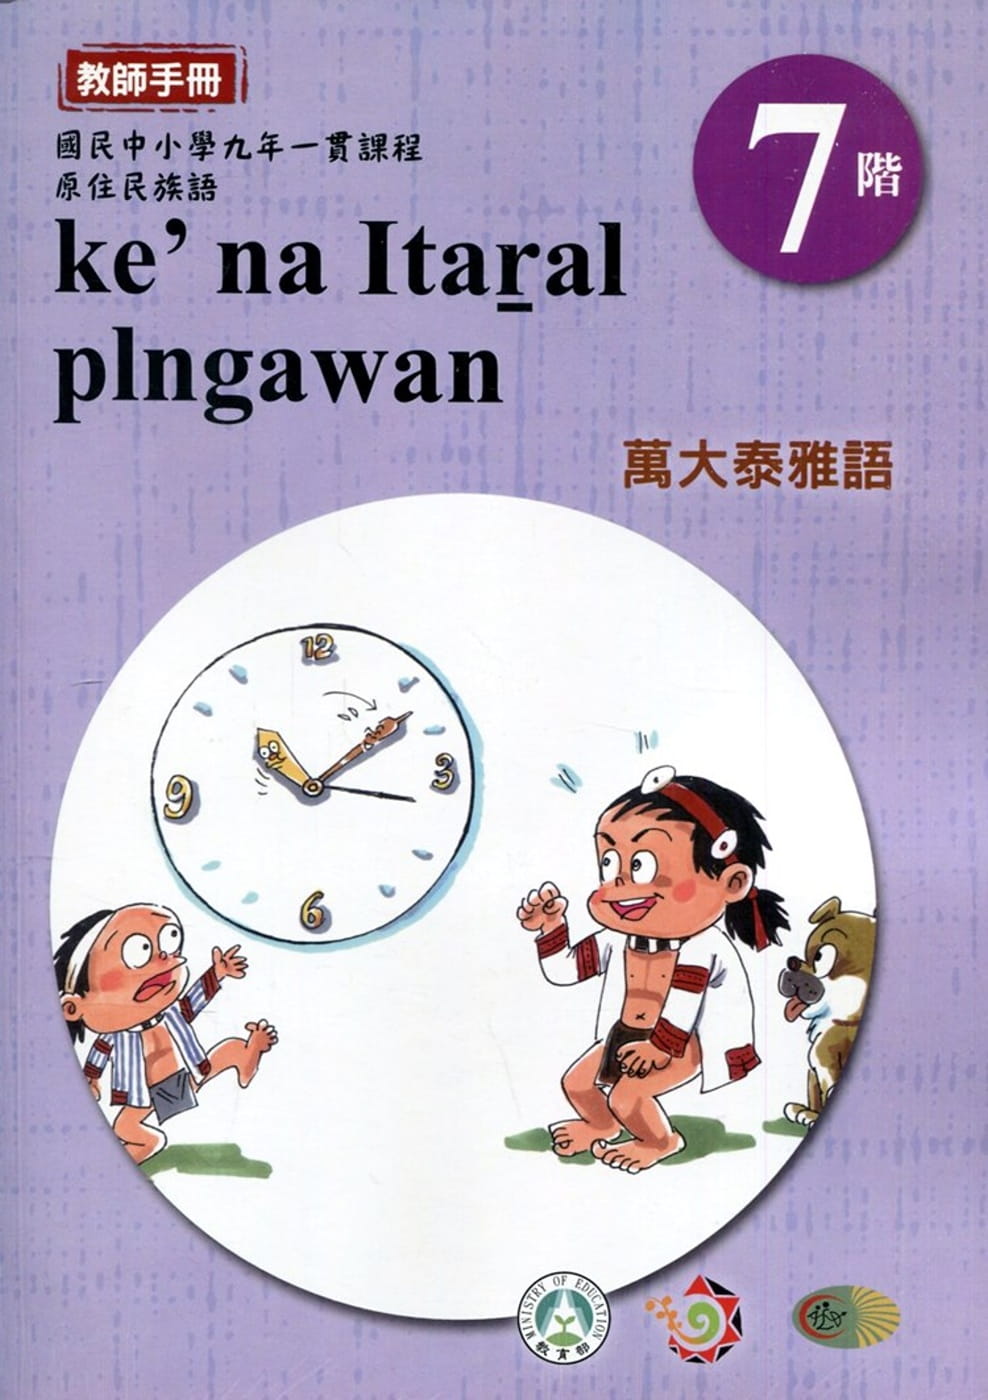 原住民族語萬大泰雅語第七階教師手冊2版